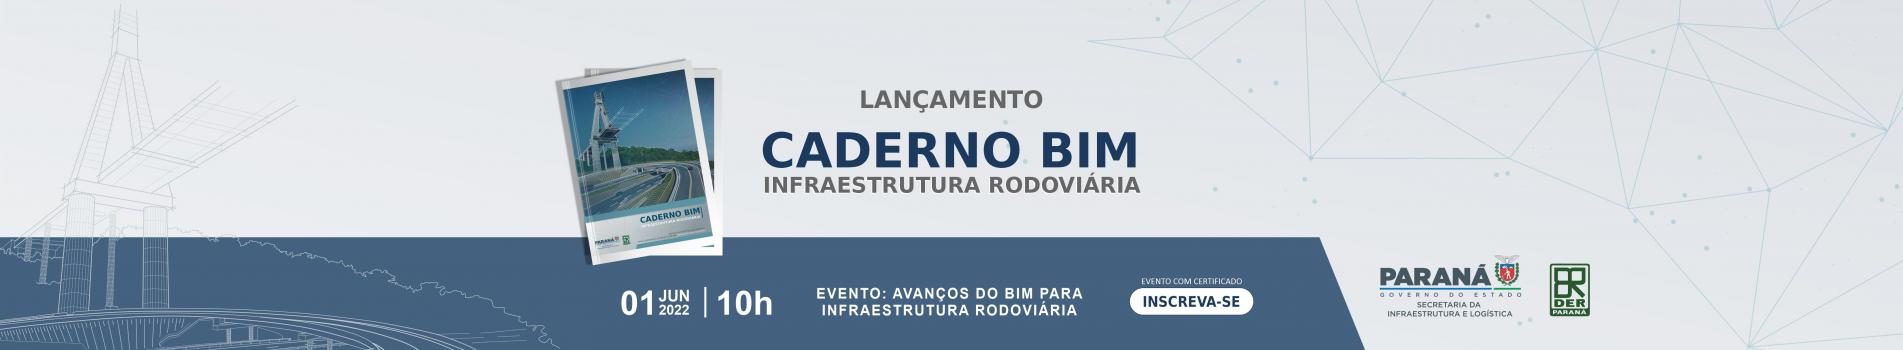 Lançamento Caderno BIM Infraestrutura Rodoviária